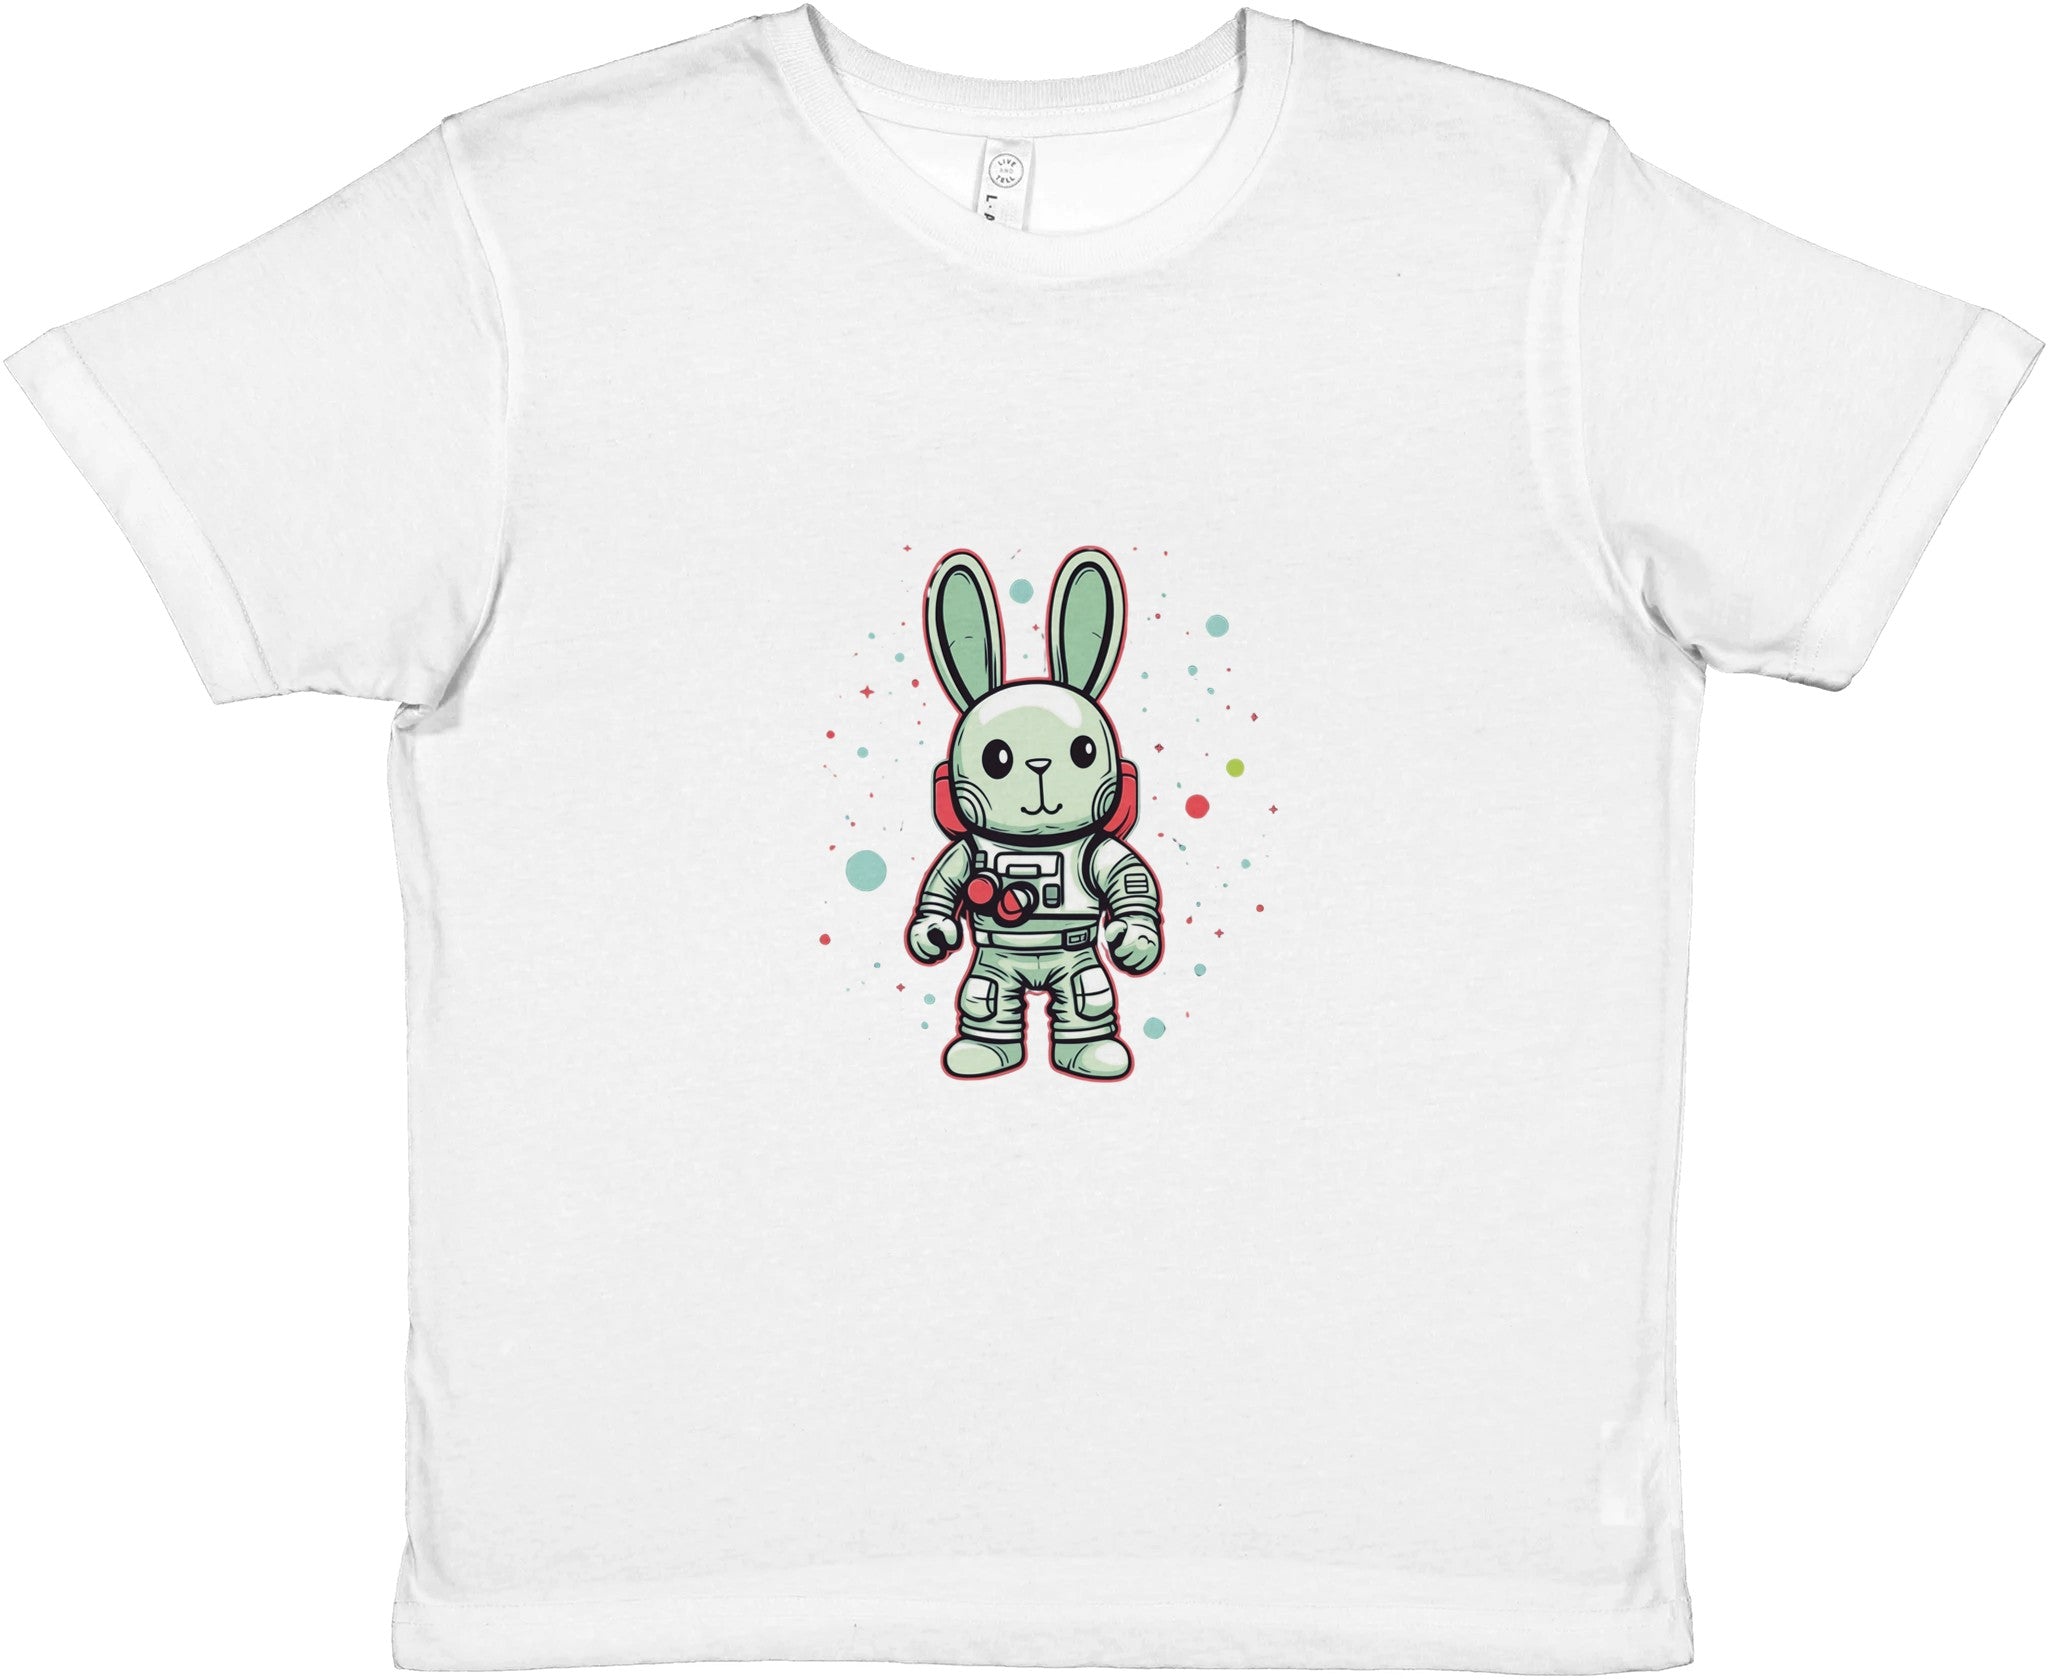 Cosmic Hopper Kids Crewneck T-shirt - Optimalprint